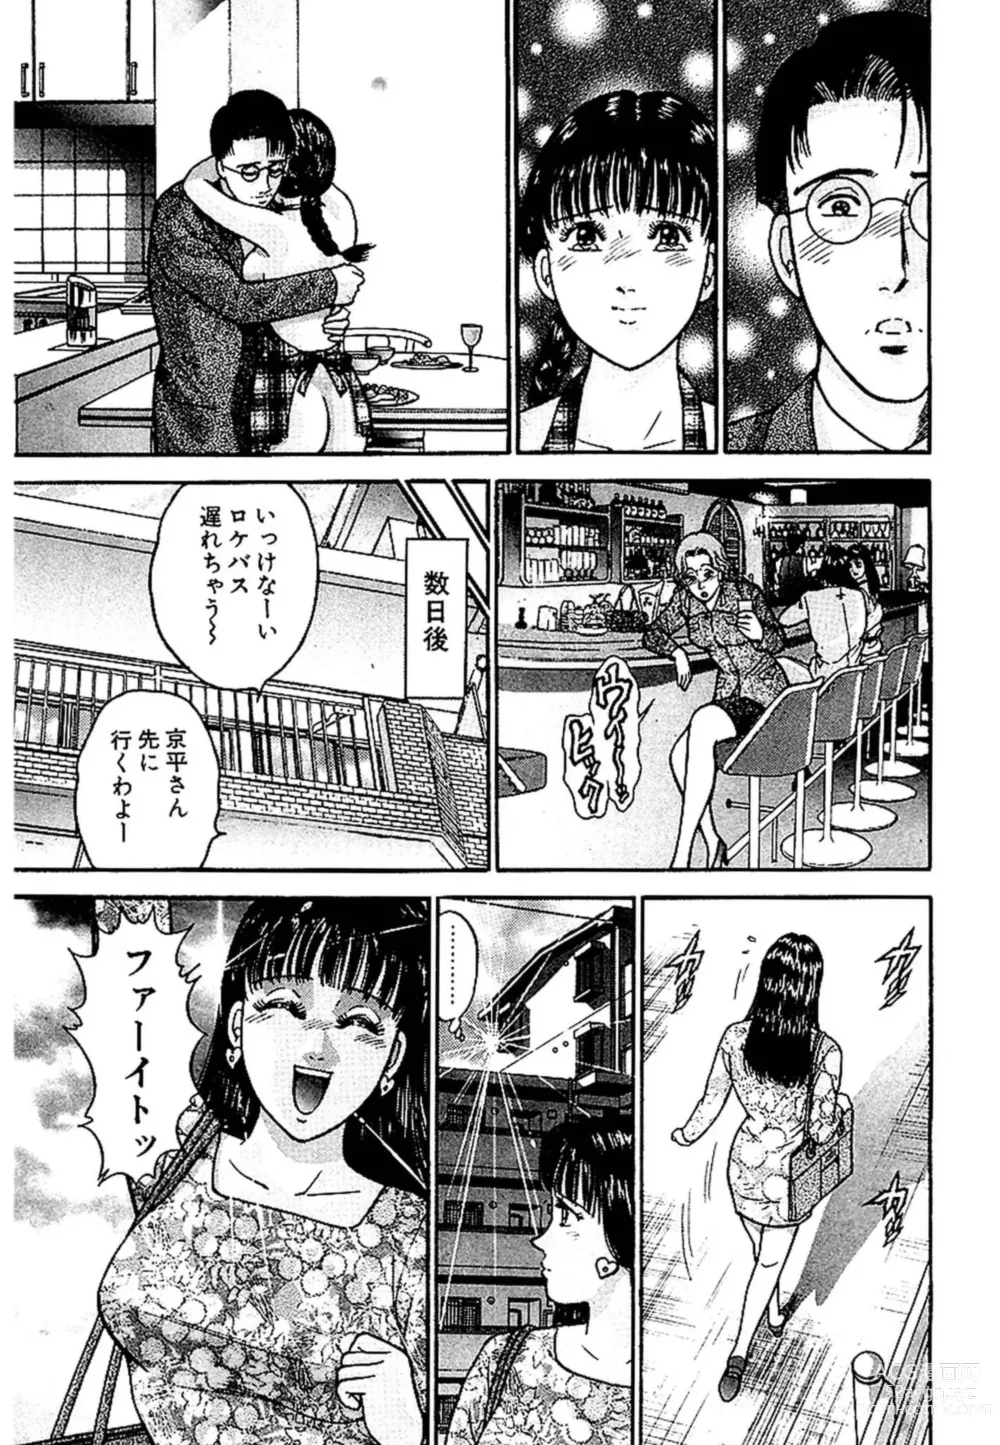 Page 22 of manga Sekkusuresu Shinsō-ban 1